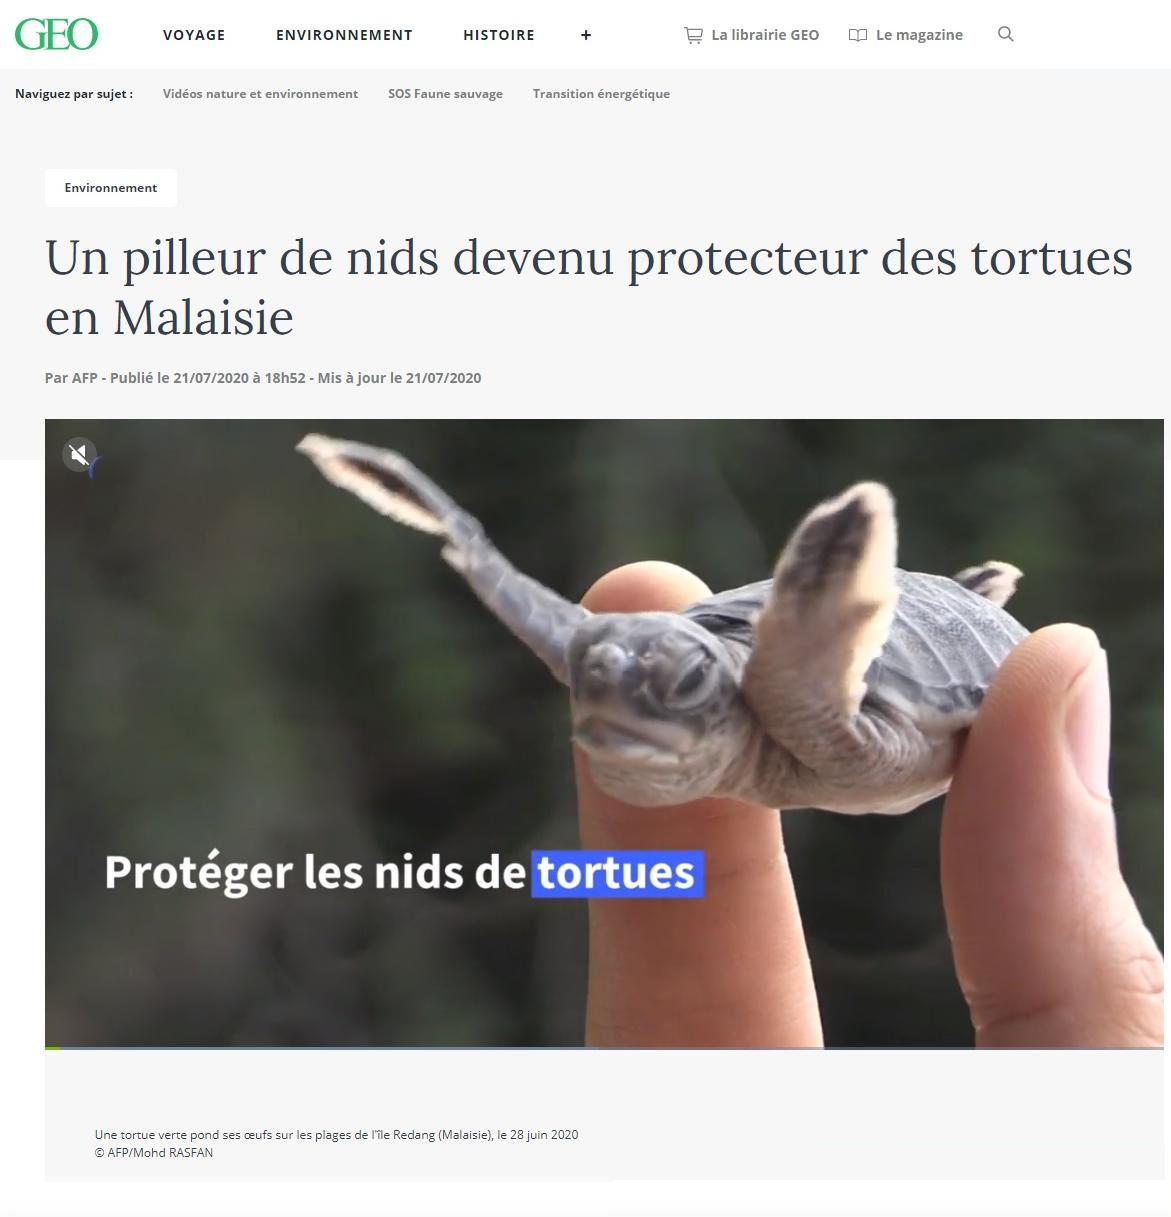 Article "Un pilleur de nids devenu protecteur des tortues en Malaisie".